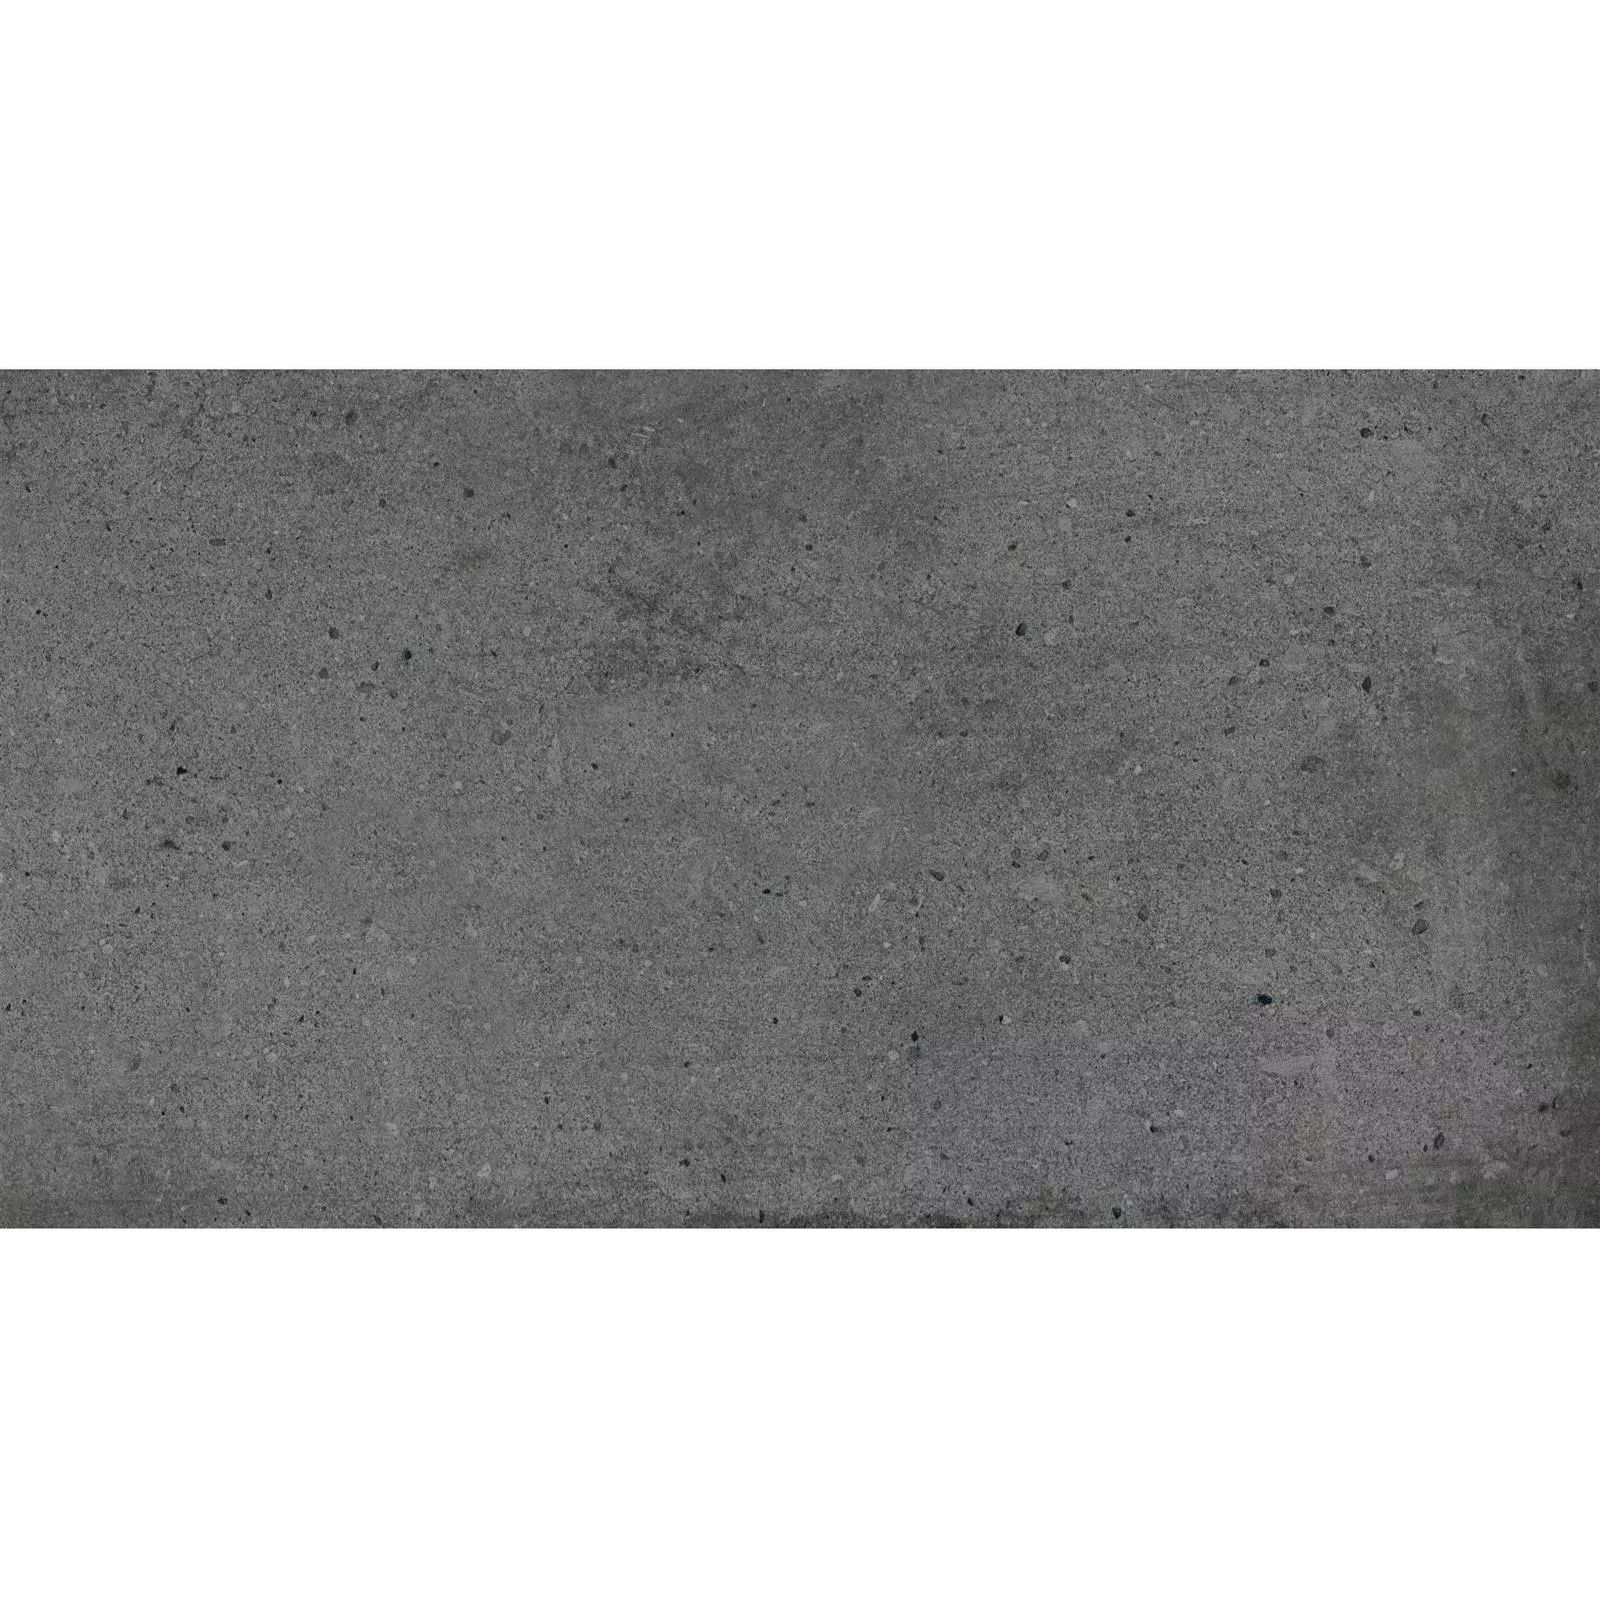 Próbka Płytki Podłogowe Freeland Kamień Optyka R10/B Antracyt 30x60cm